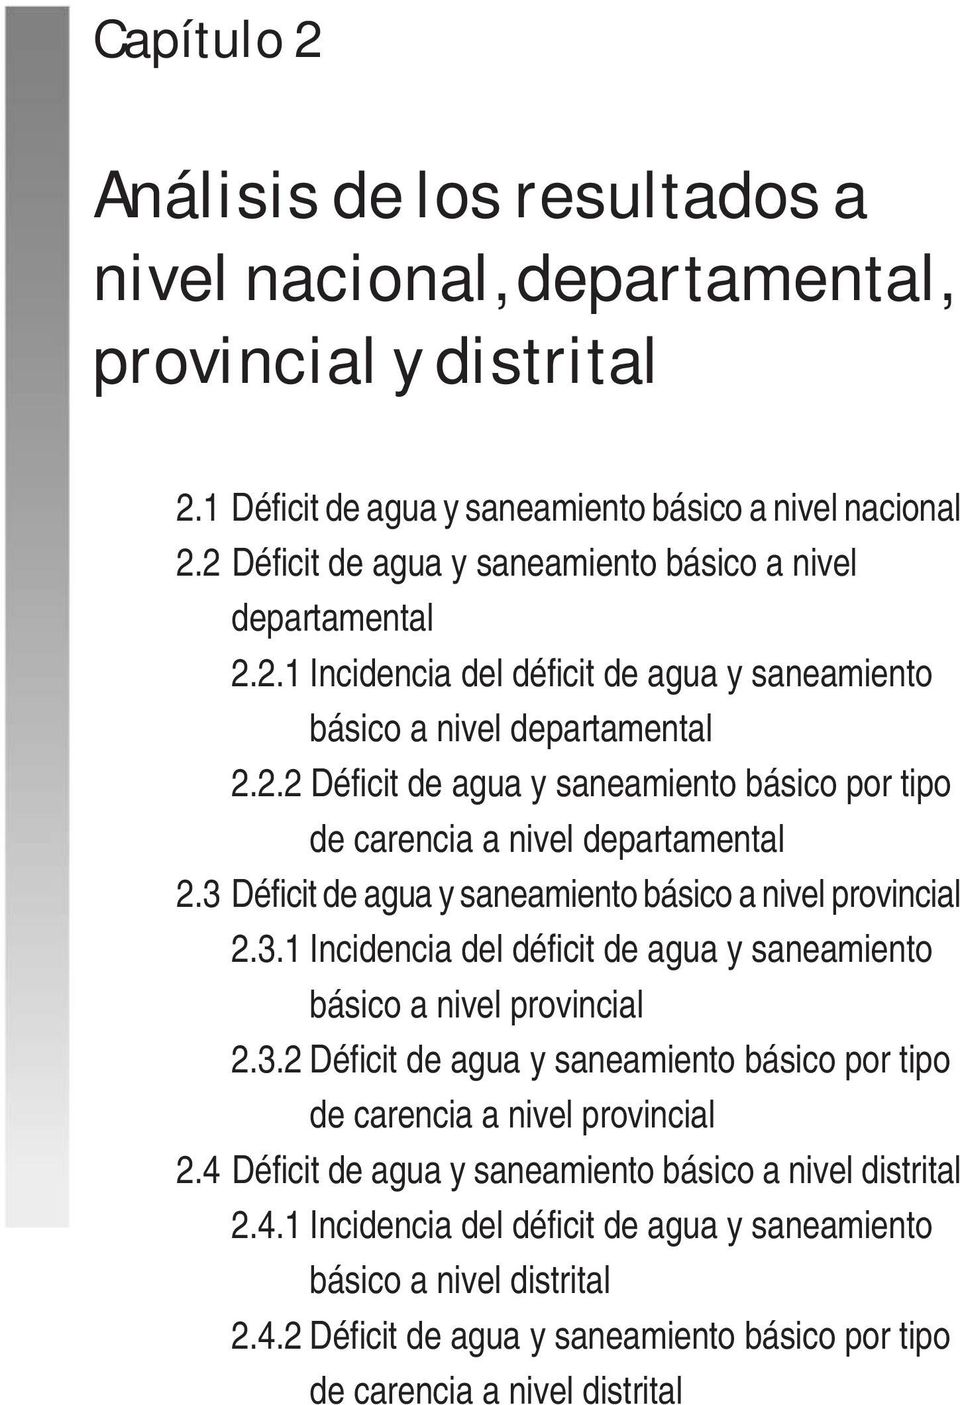 3 Déficit de agua y saneamiento básico a nivel provincial 2.3.1 Incidencia del déficit de agua y saneamiento básico a nivel provincial 2.3.2 Déficit de agua y saneamiento básico por tipo de carencia a nivel provincial 2.